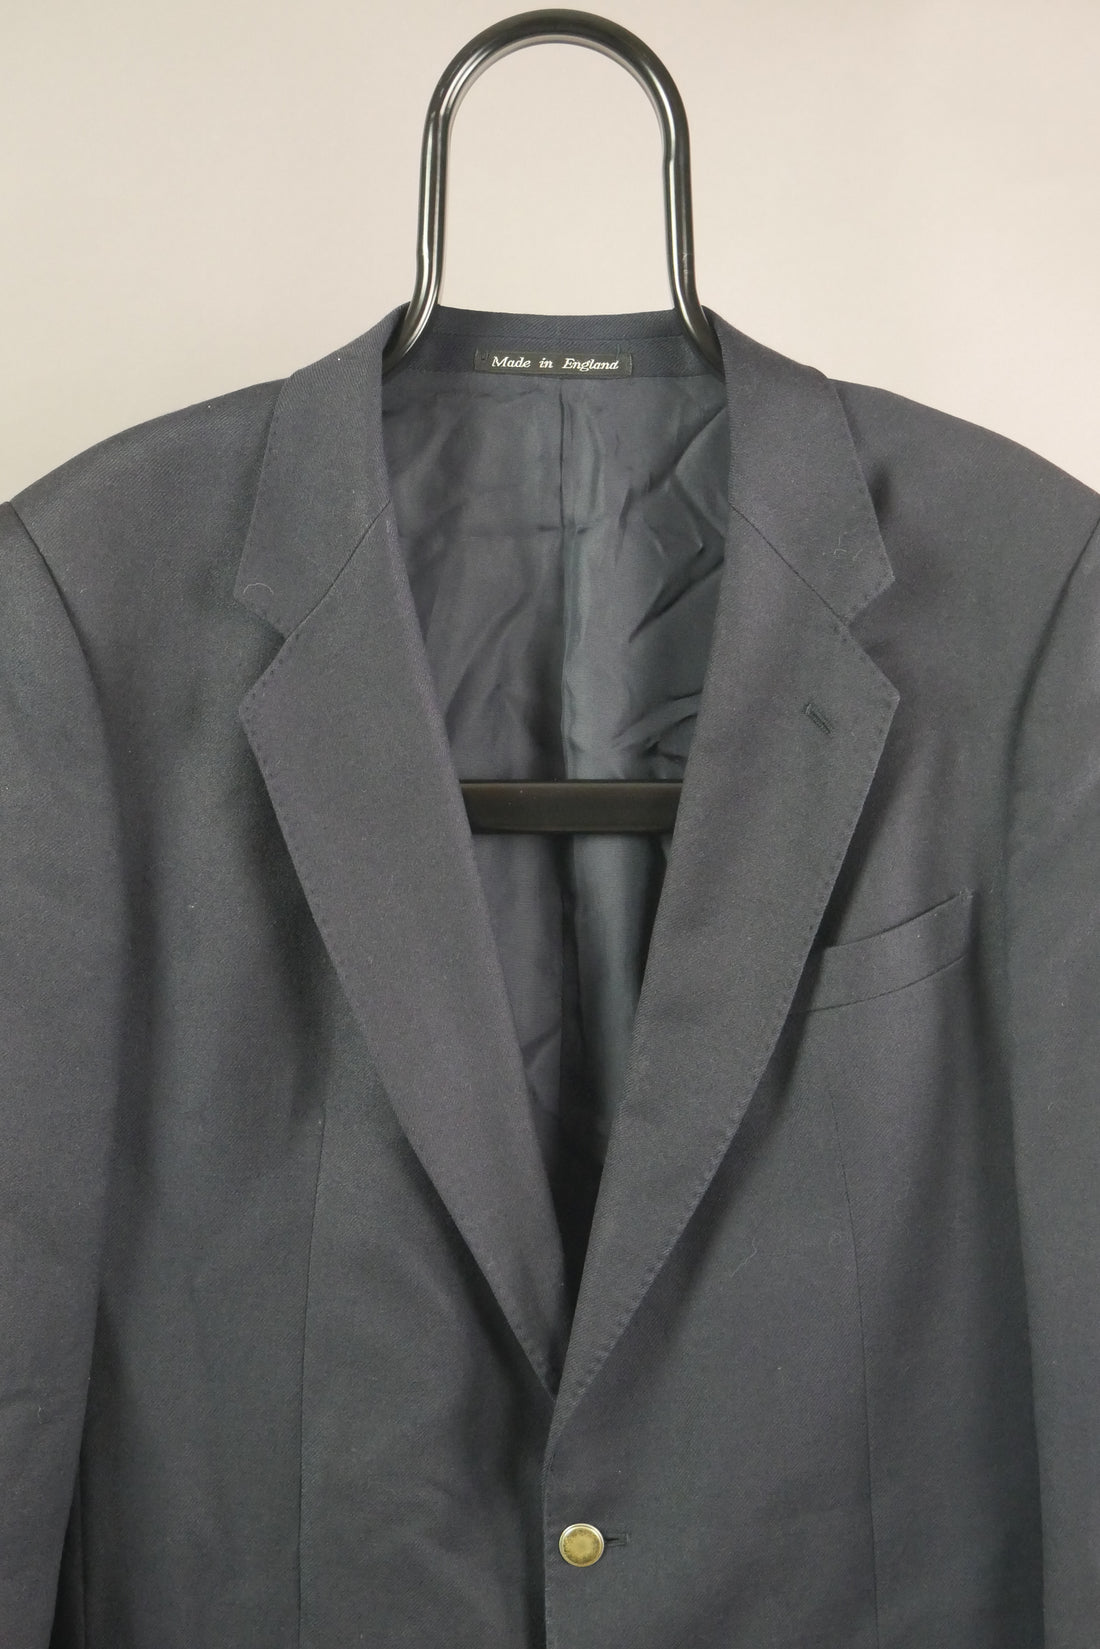 The Classic Vintage Berwin Suit Jacket (44R)